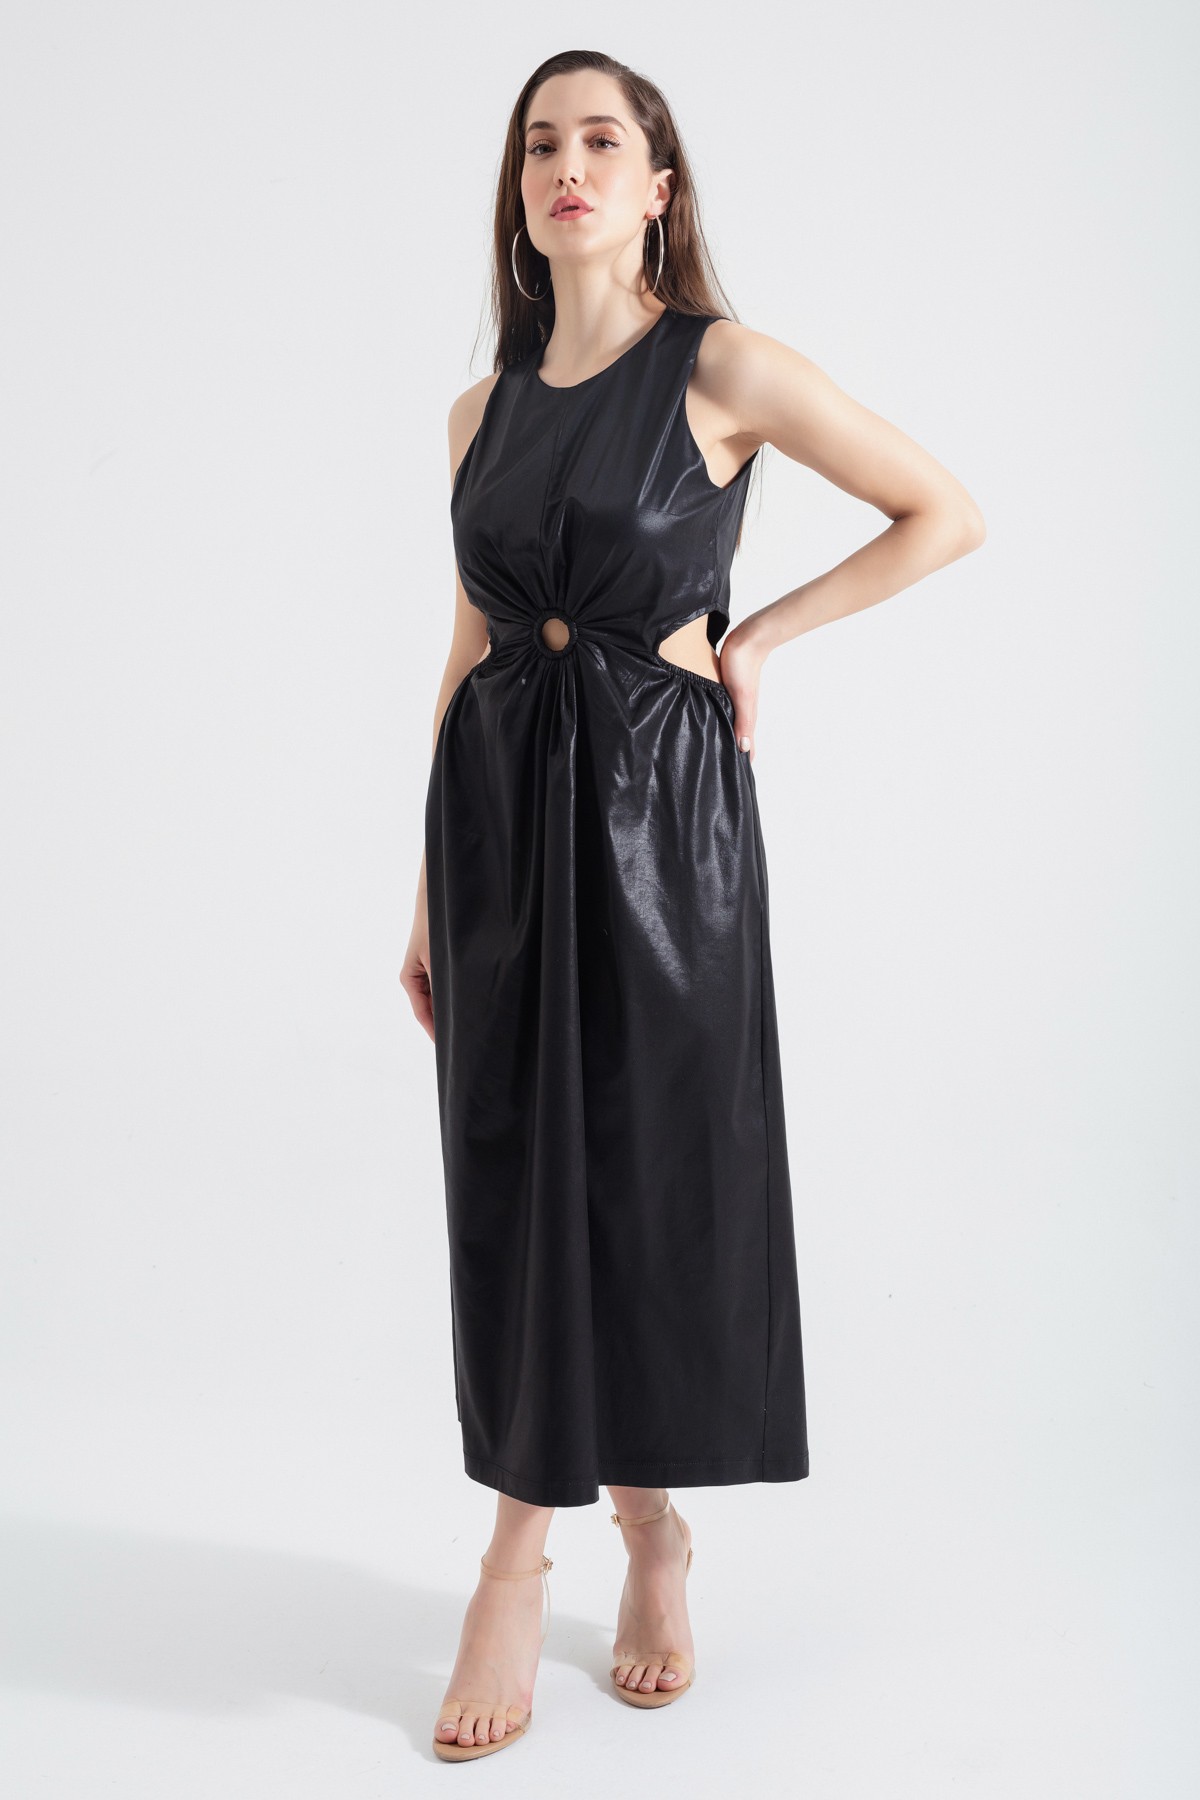 Kadın Bel Dekolteli Parlak Kumaş Dokulu Midi Elbise - Siyah